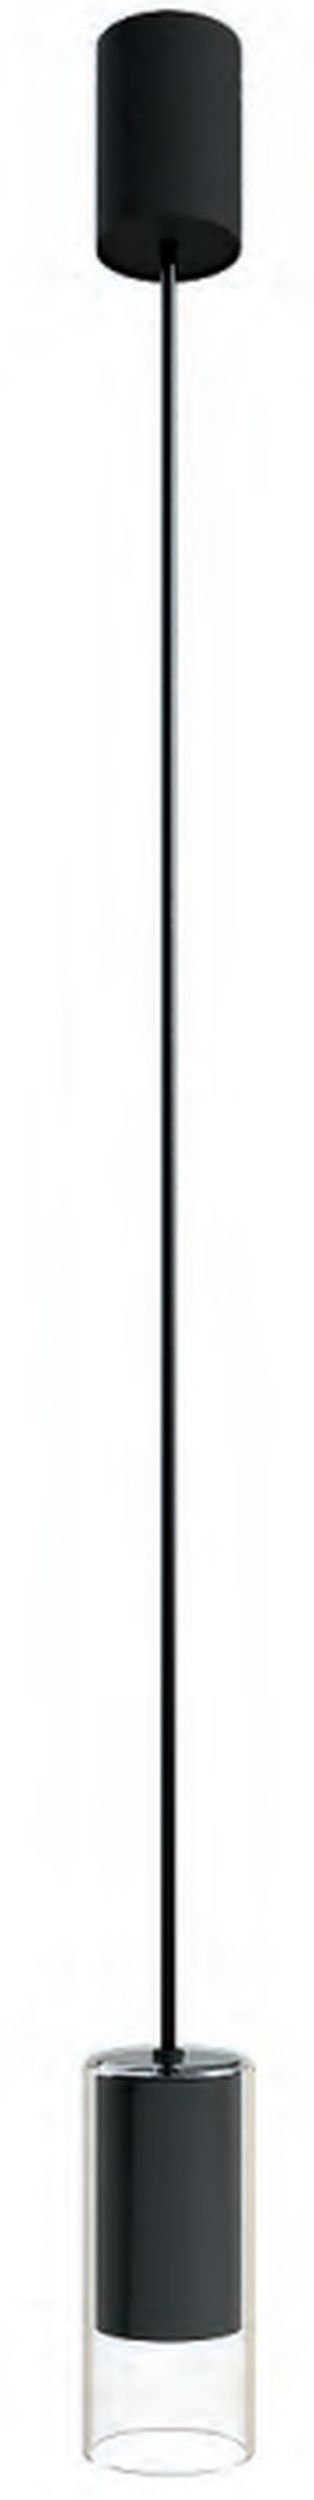 Nowodvorski Lighting Cylinder S lampa wisząca 1x10W czarna/przezroczysta 7866 - Wysyłka w 24h